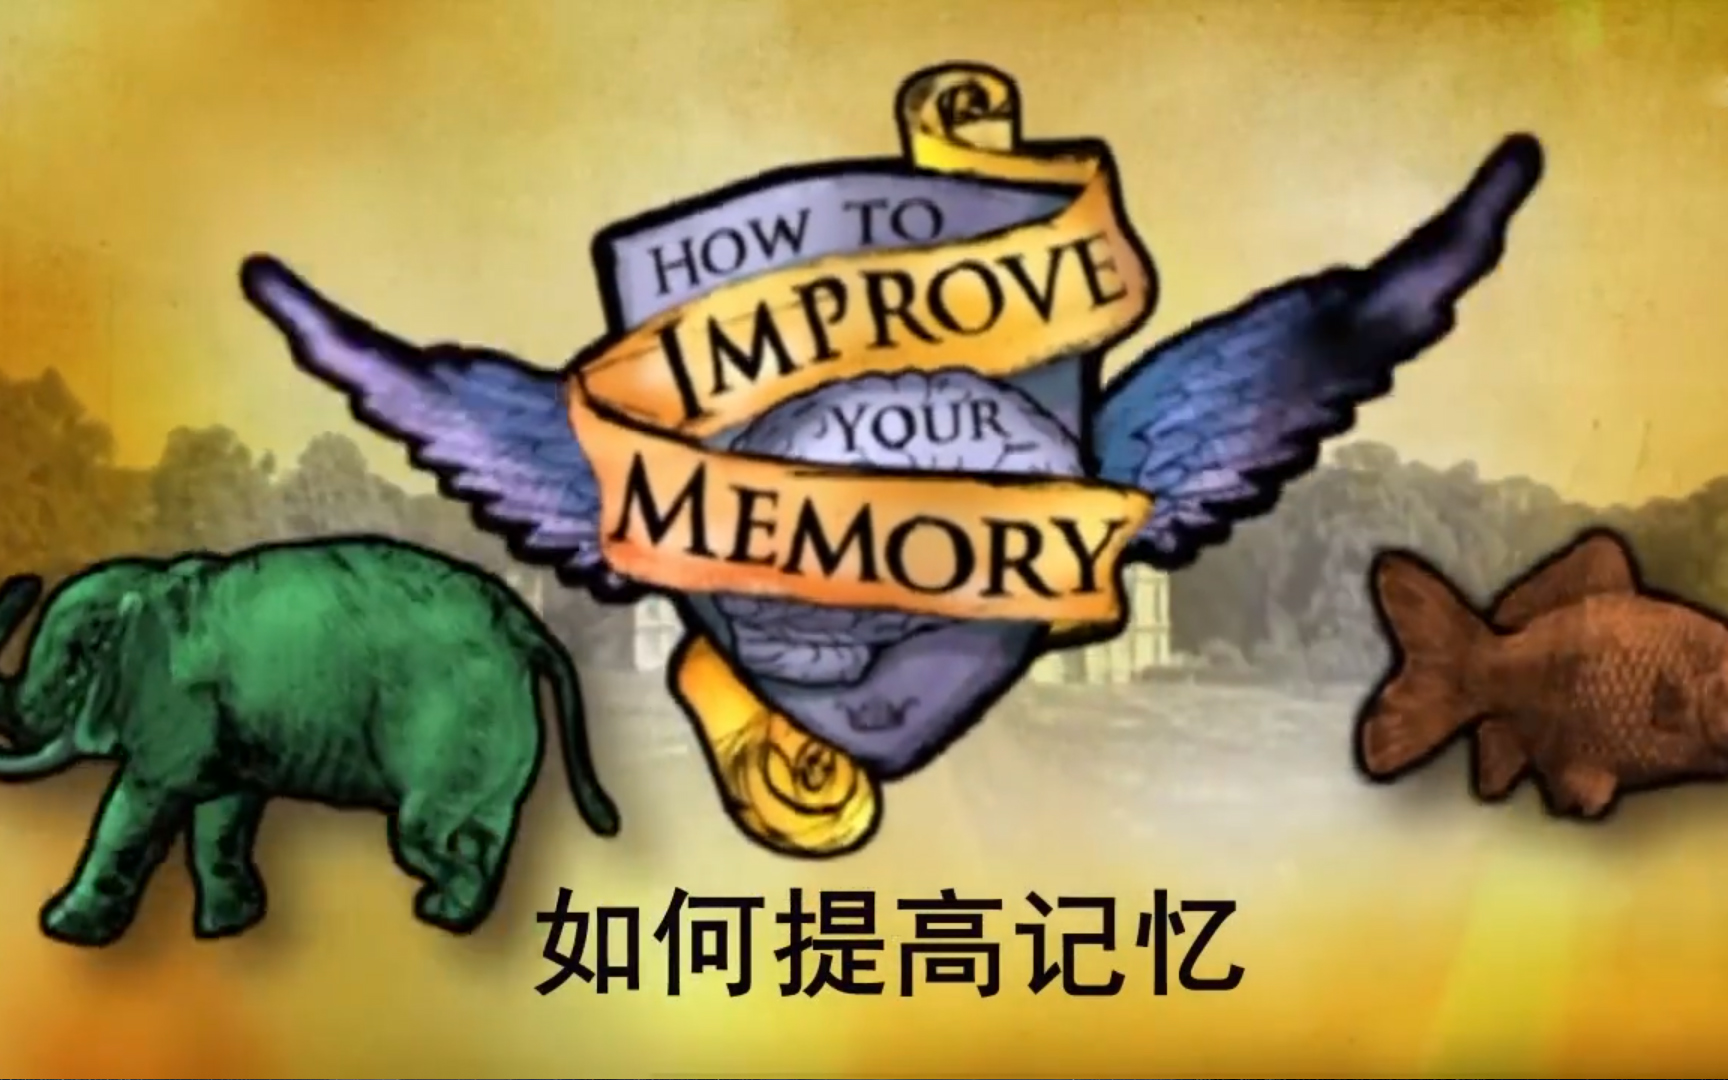 【纪录片】如何提高记忆 - How to Improve Your Memory